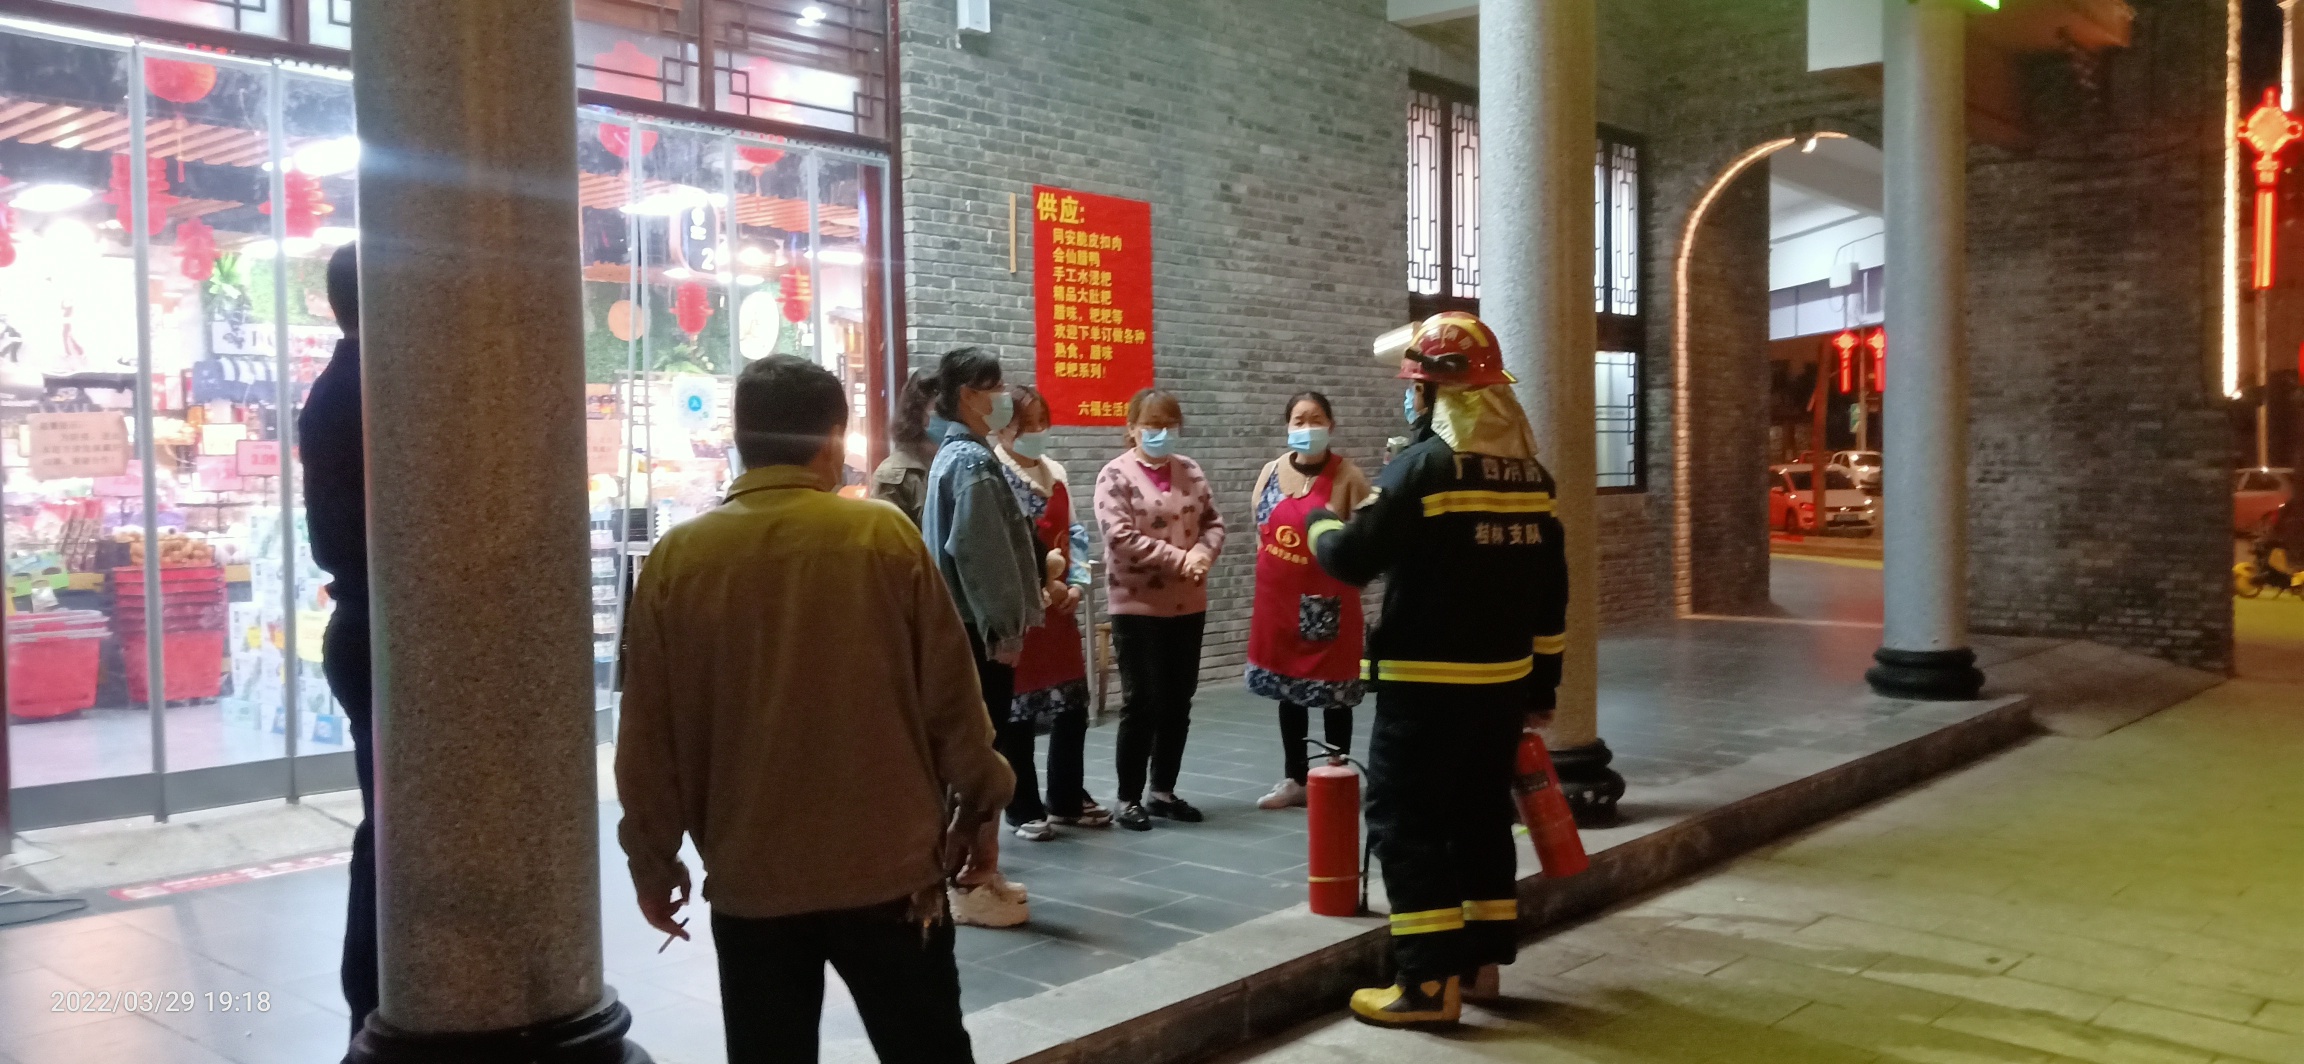 昨晚偶遇消防人员在油茶小镇的六福超市演练消防716 / 作者:陈爱国 / 帖子ID:294073